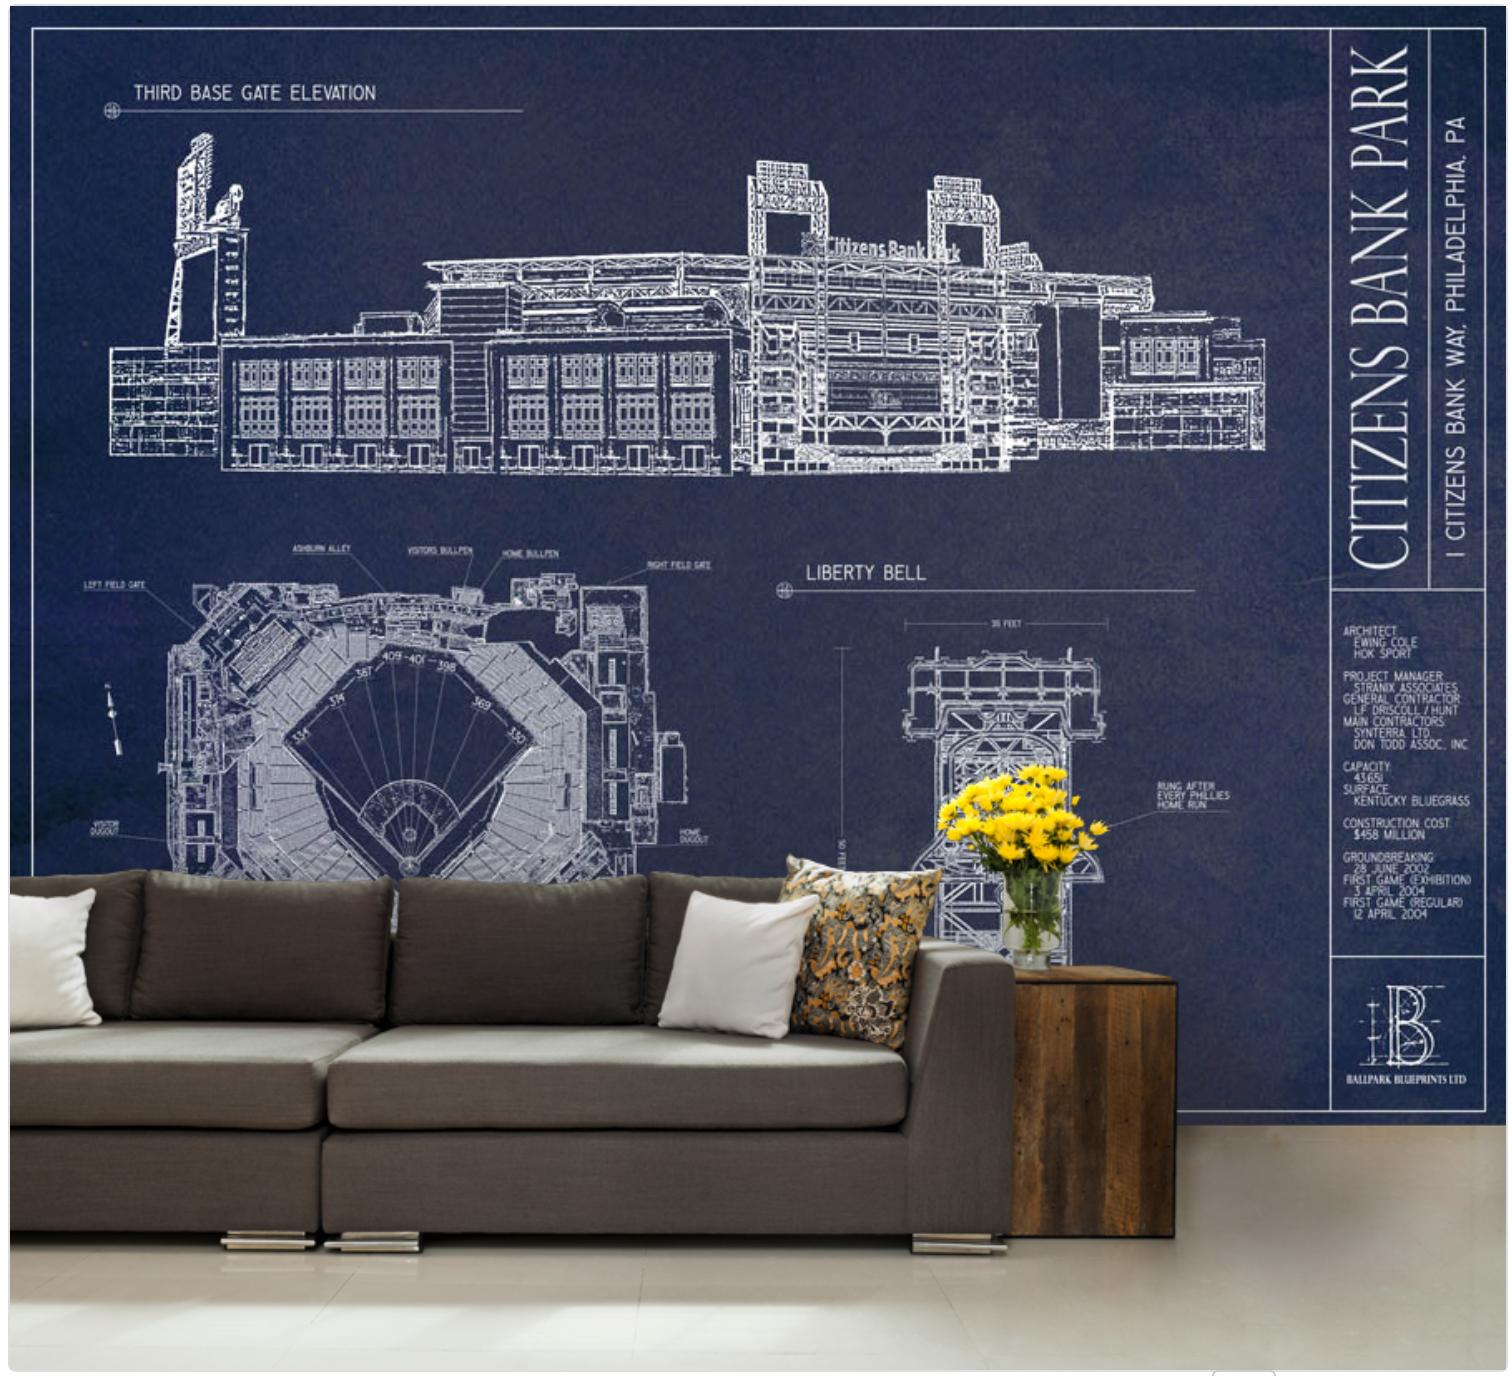 Great American Ballpark Blueprint Wallpaper Mural - Murals Your Way